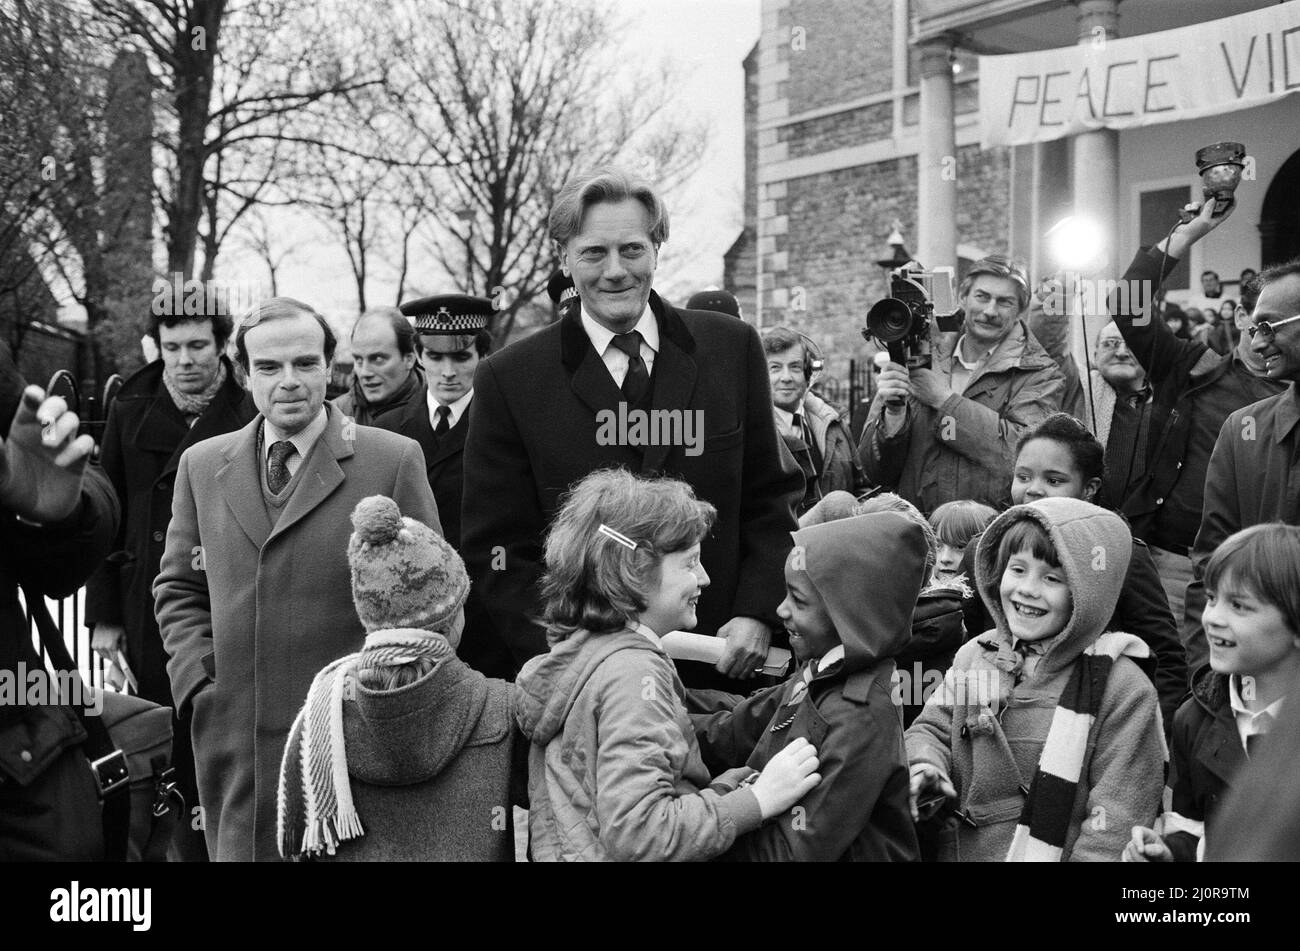 Michael Heseltine, secrétaire d'État à la Défense, lors de sa promenade à Lewisham, où il assistait à une veillée de paix à l'église Sainte-Marie. 11th février 1983. Banque D'Images